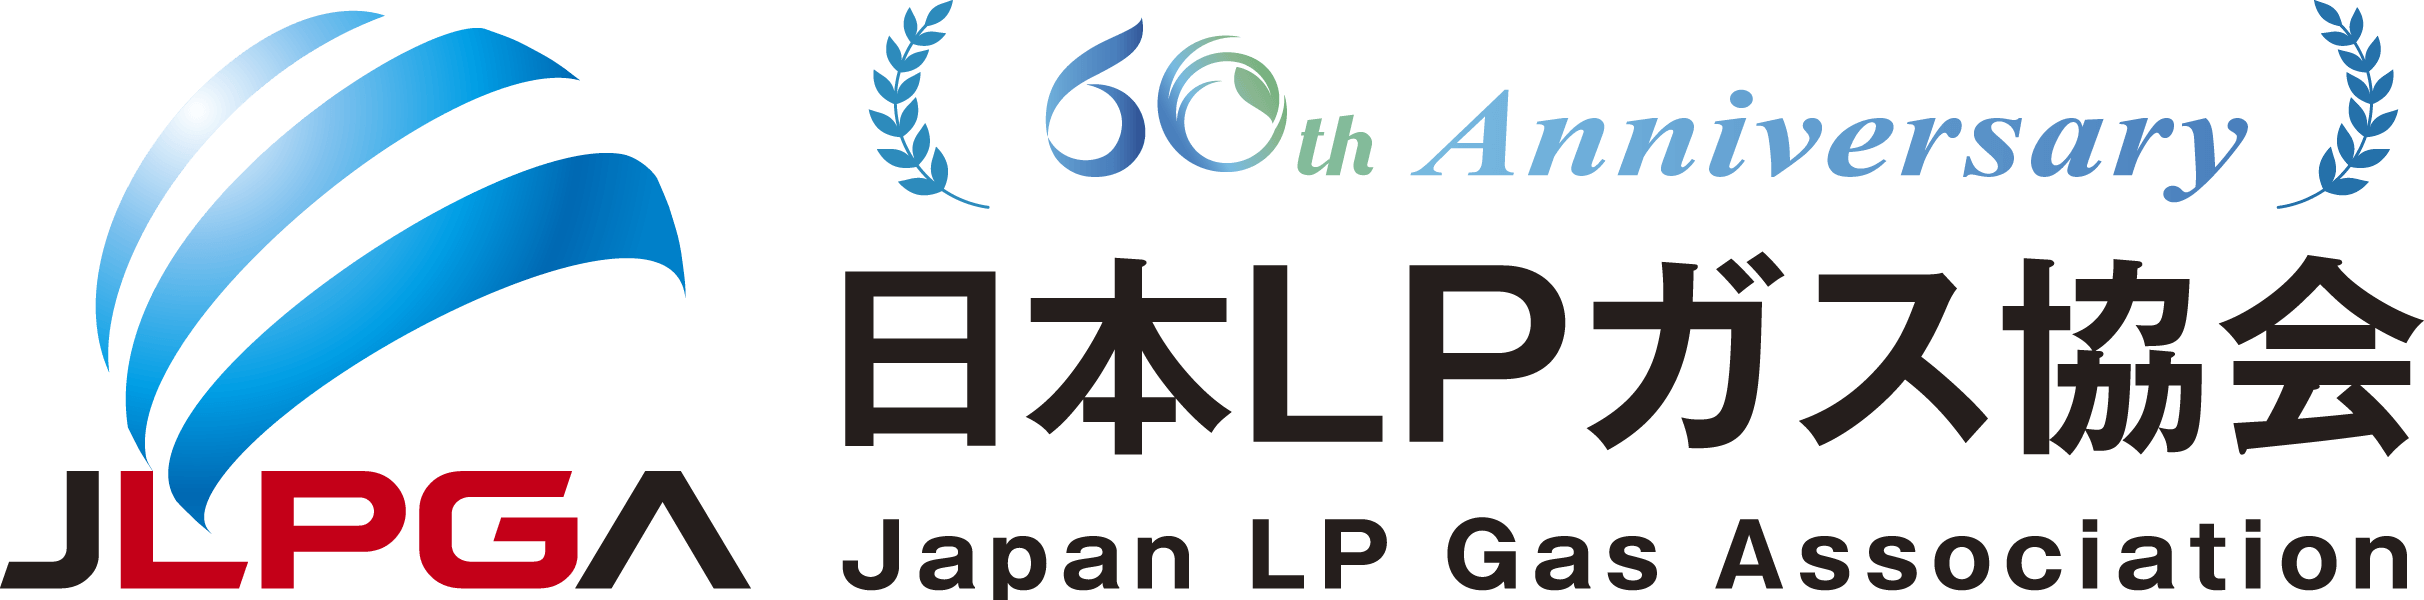 日本LPガス協会 60th ANNIVERSARY